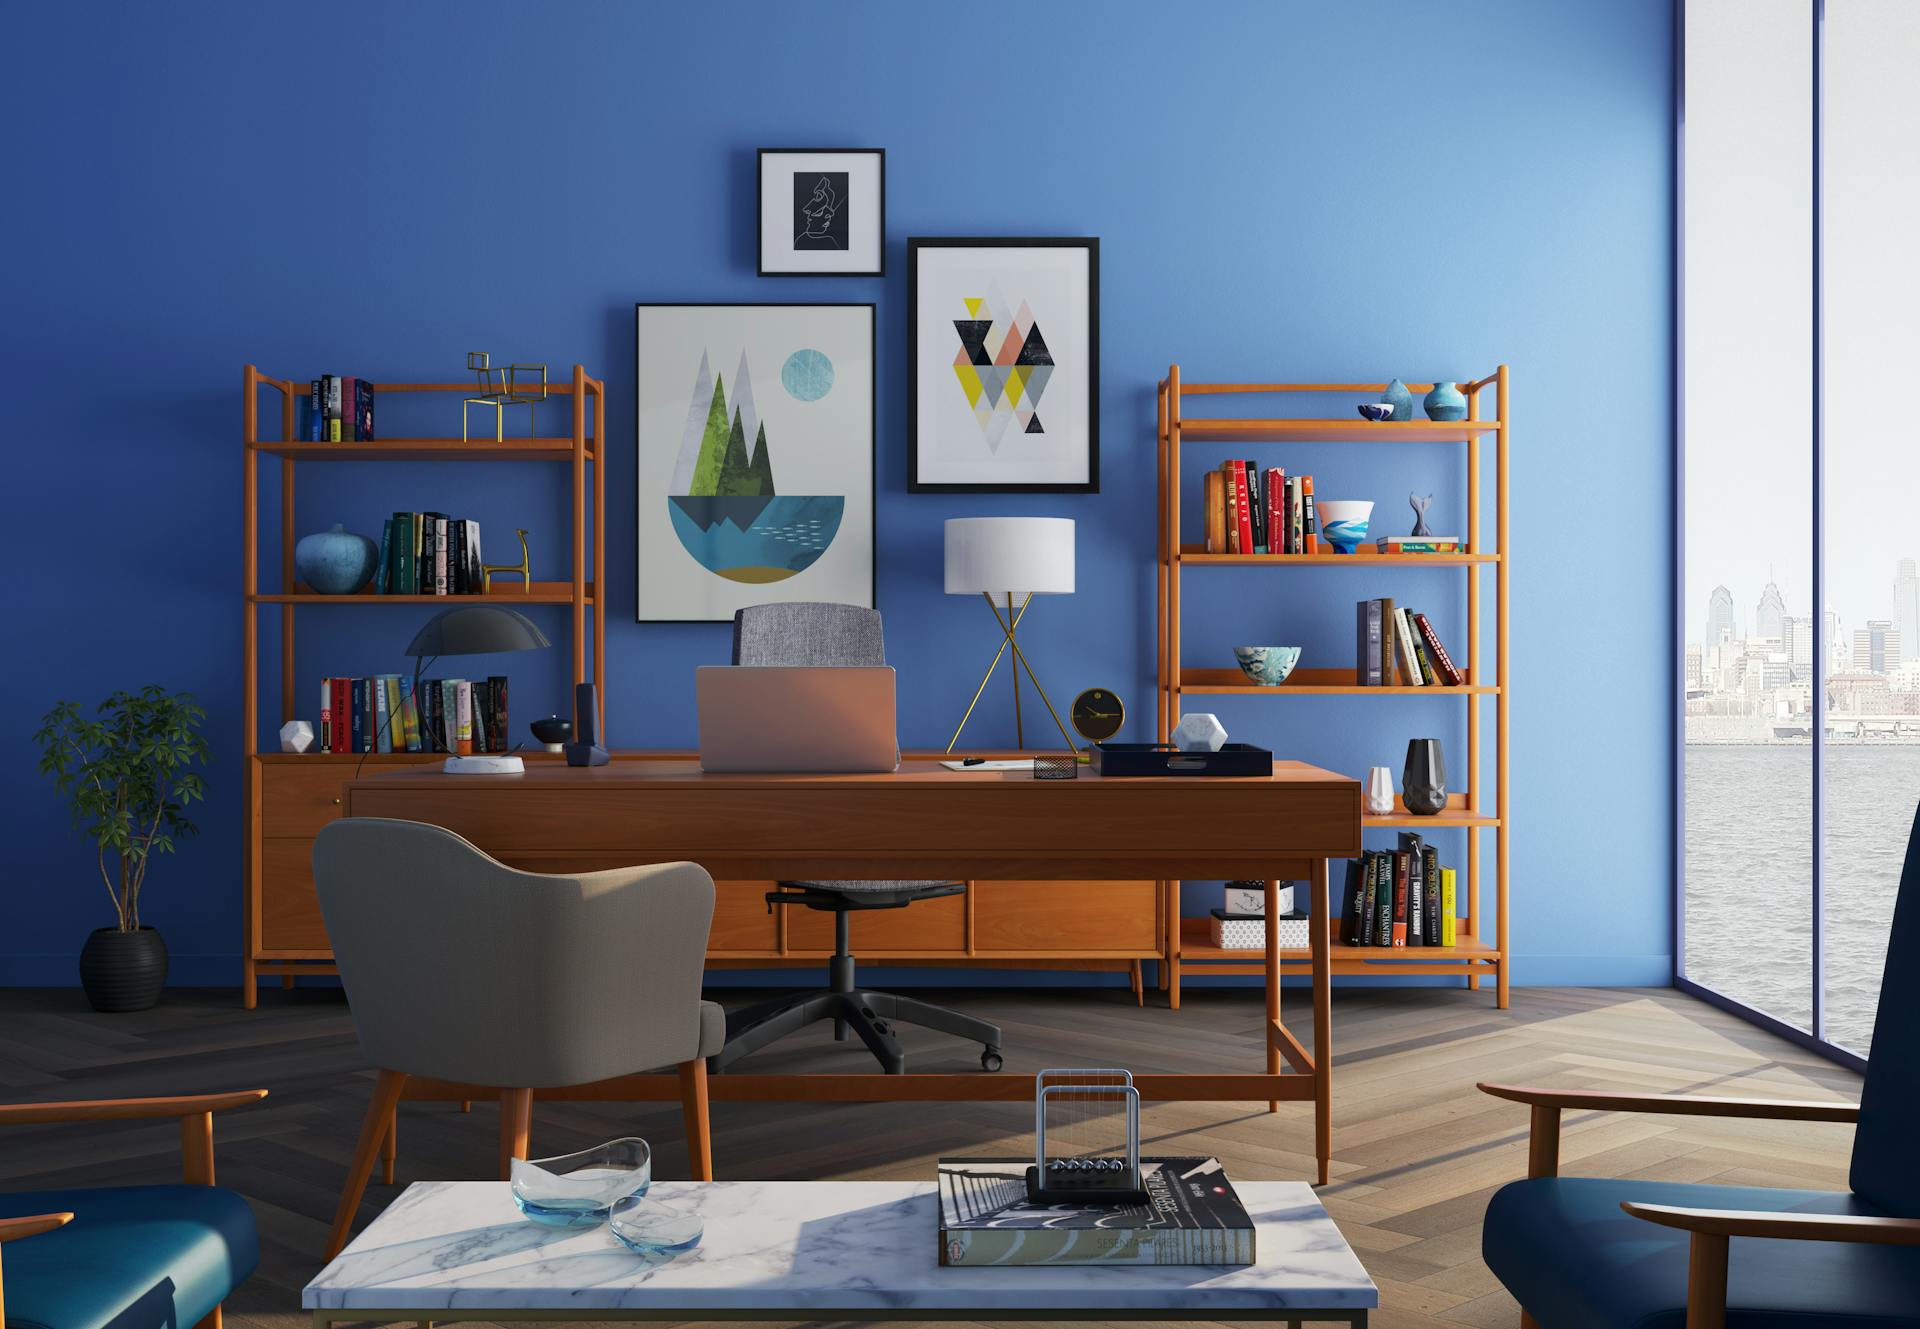 Un bureau chic avec un mur bleu | Source : Pexels